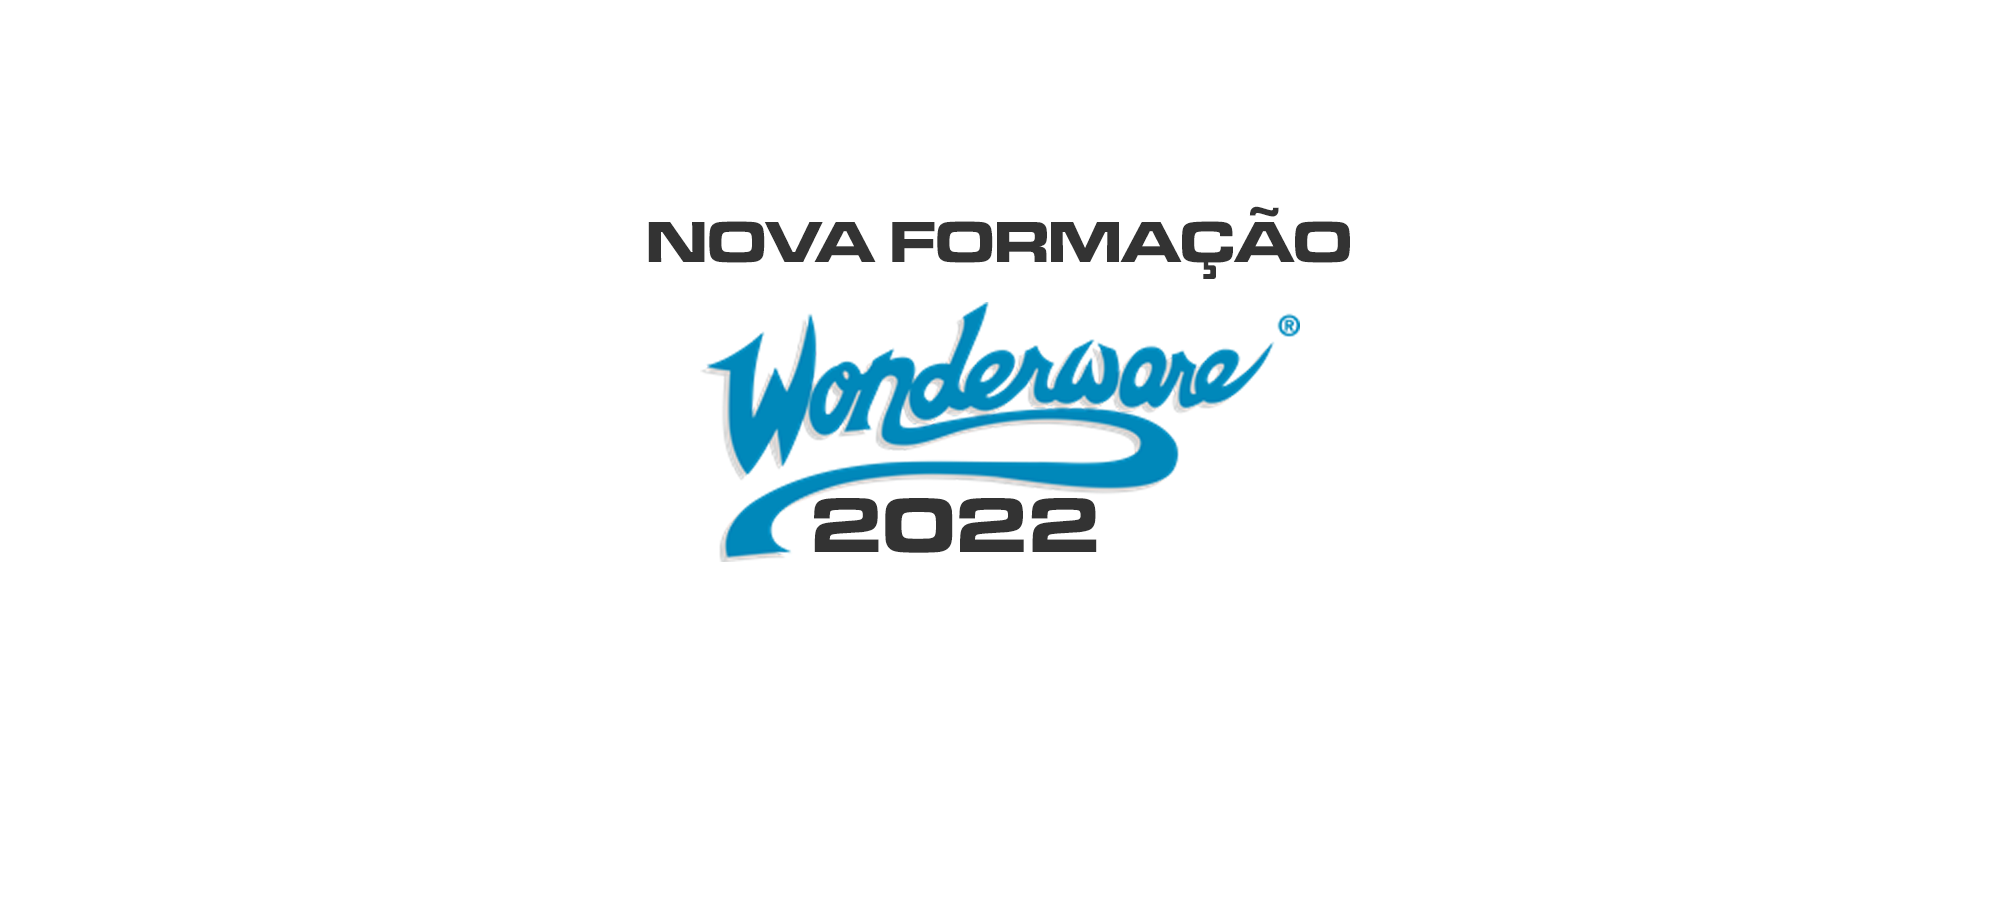 Programa de Formação Anual WONDERWARE 2022